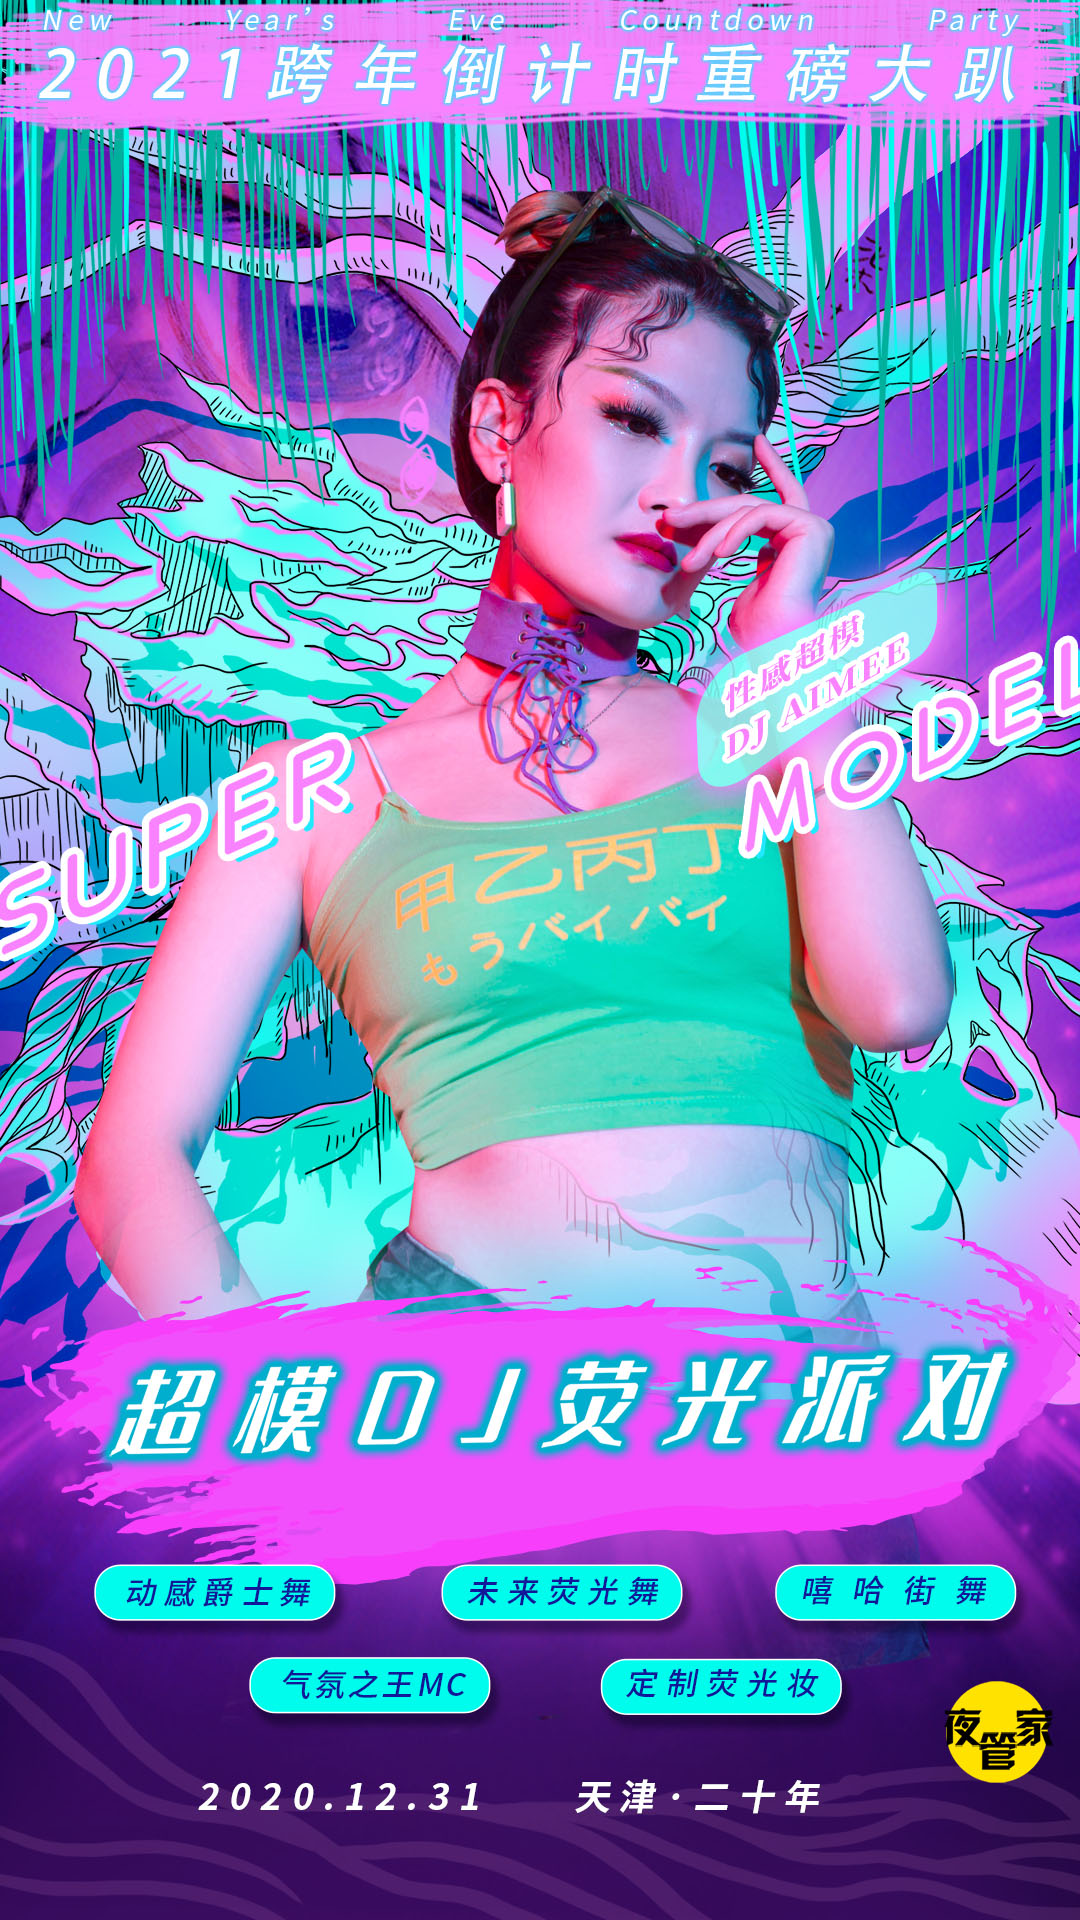 超模DJ巡演荧光派对天津站